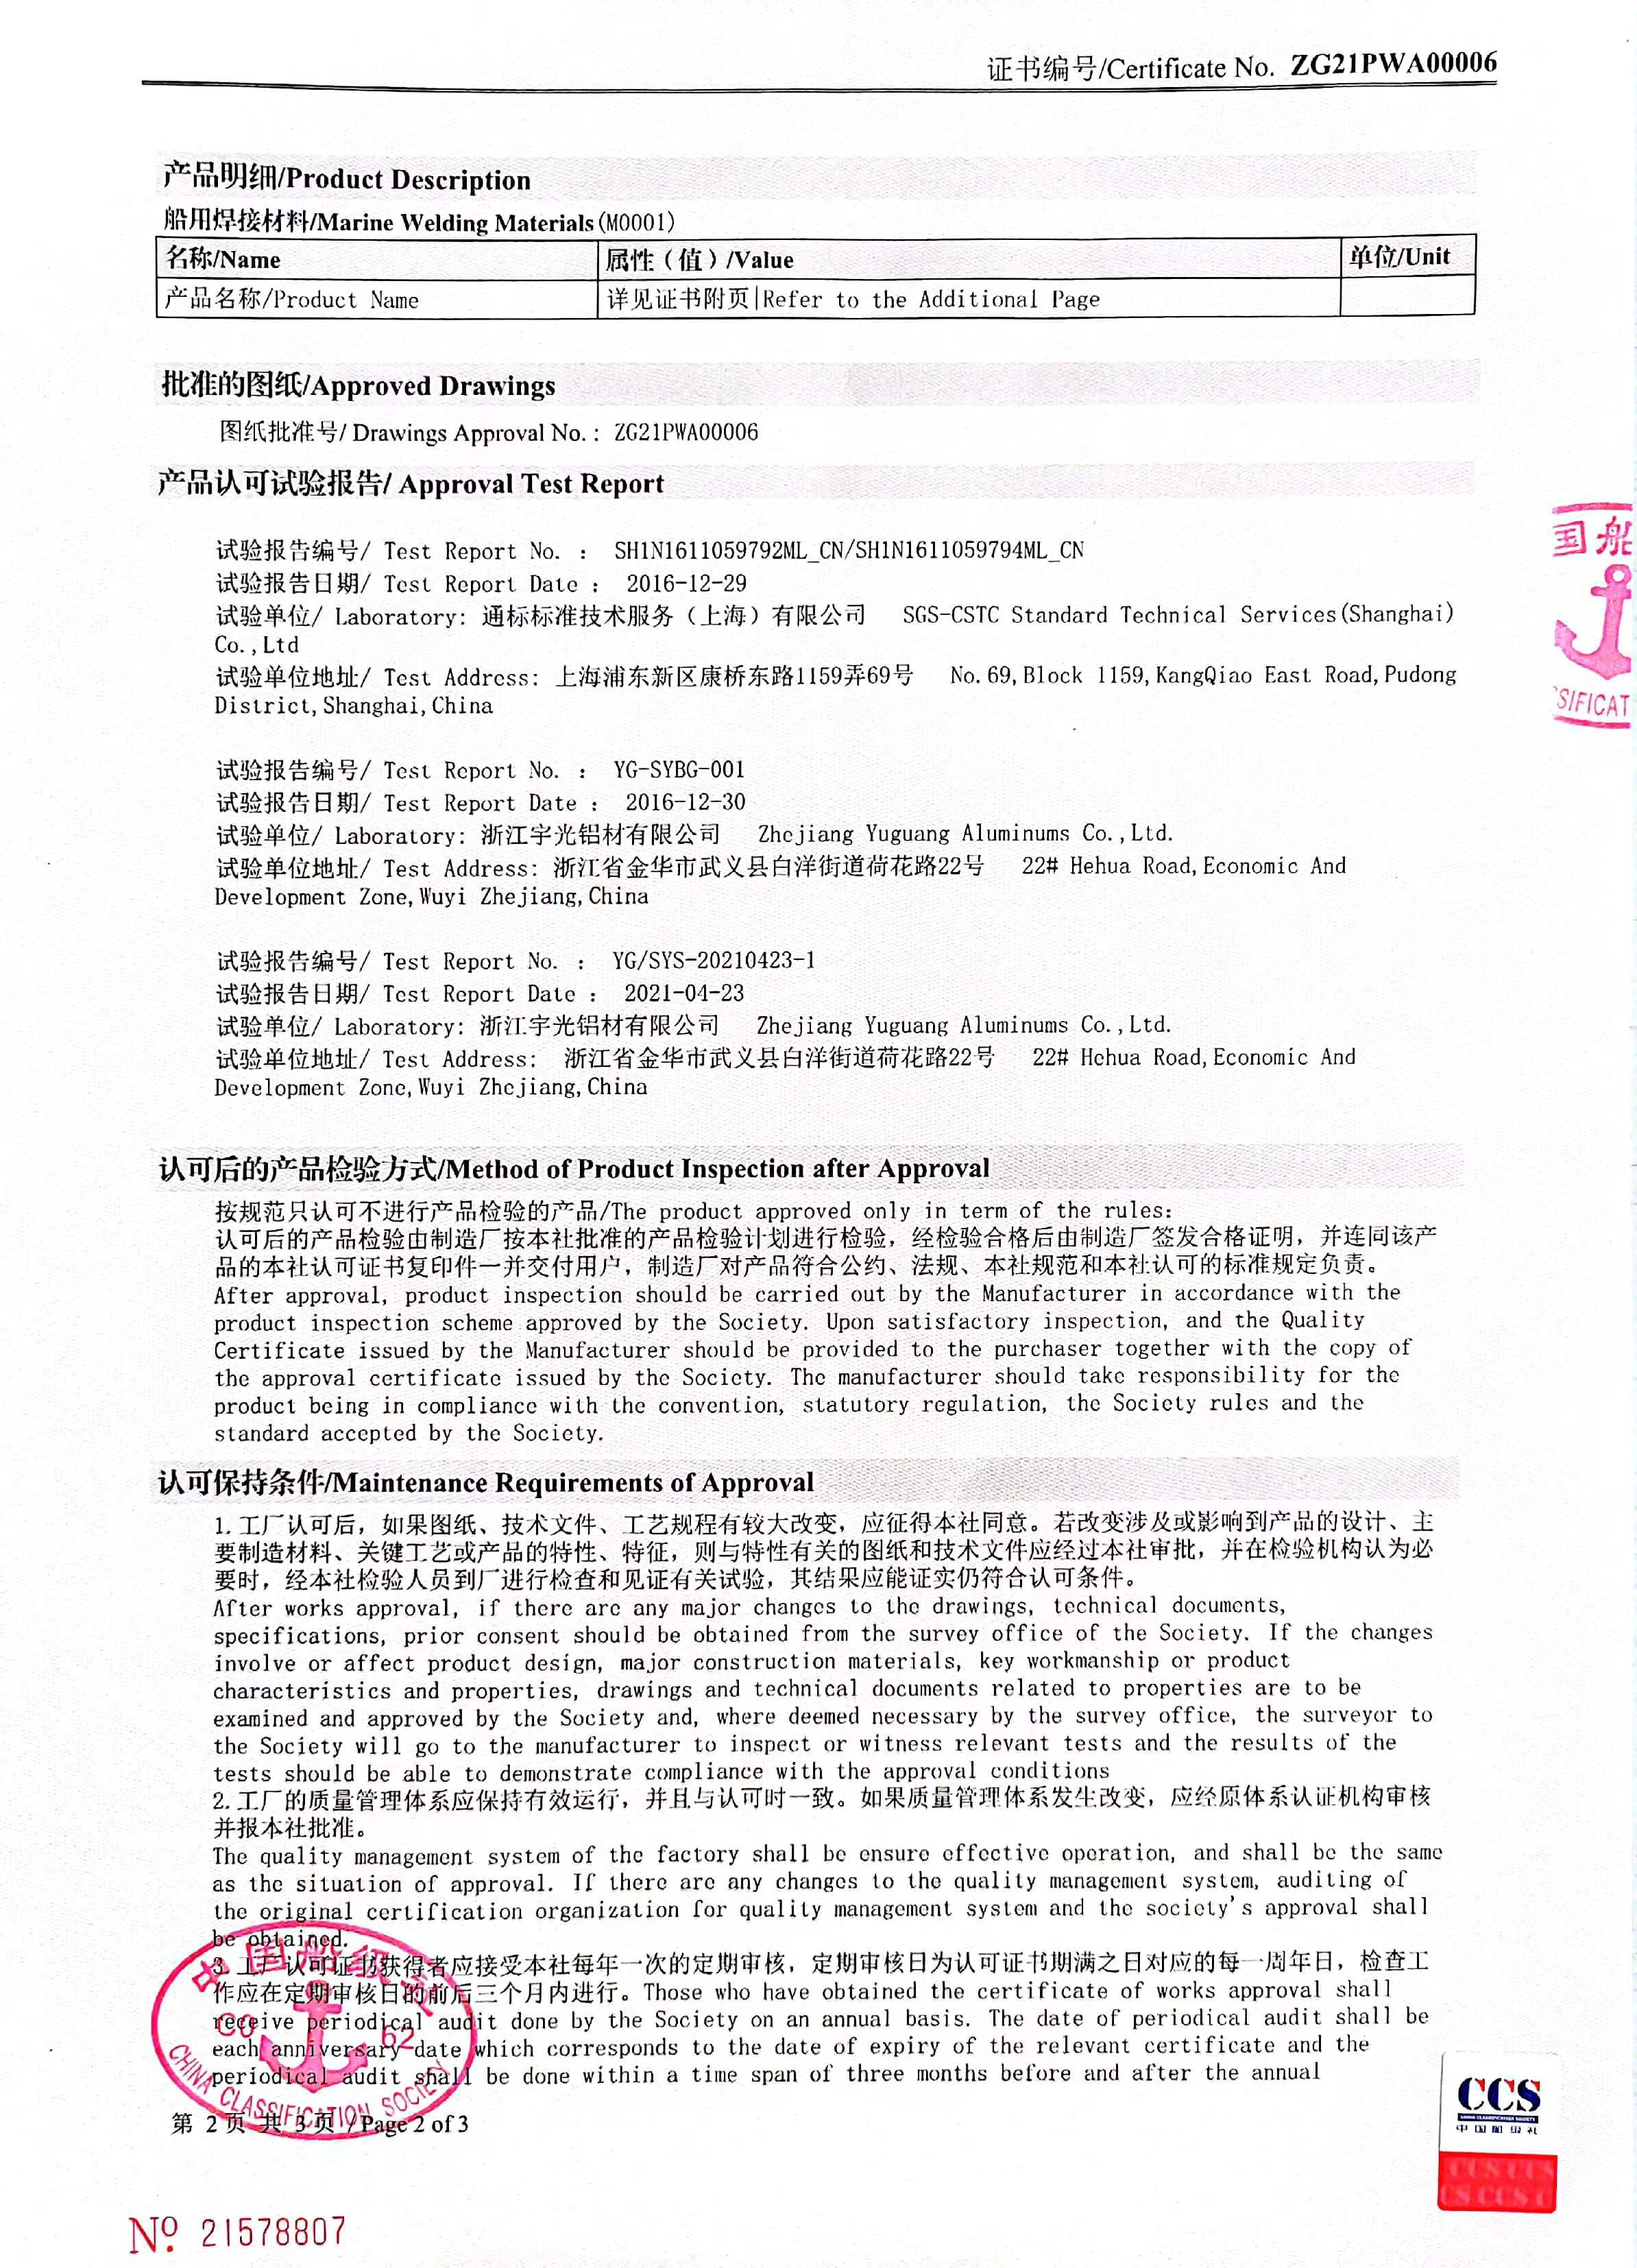 中国船级社认证证书2